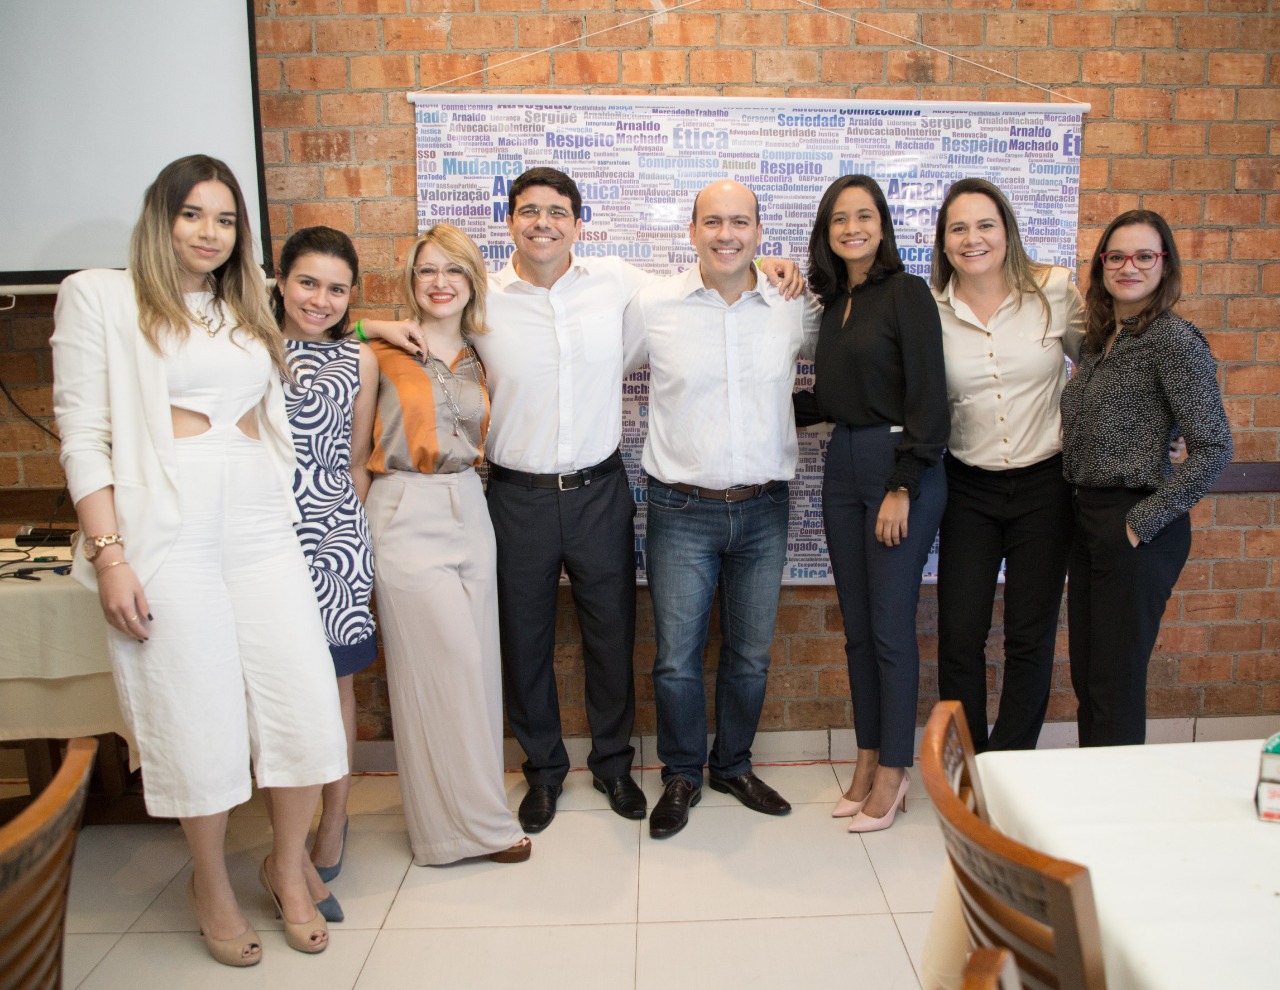 Almoço de confraternização e apoio à pré-candidatura de Dr. Arnaldo Machado para a presidência da OAB Sergipe